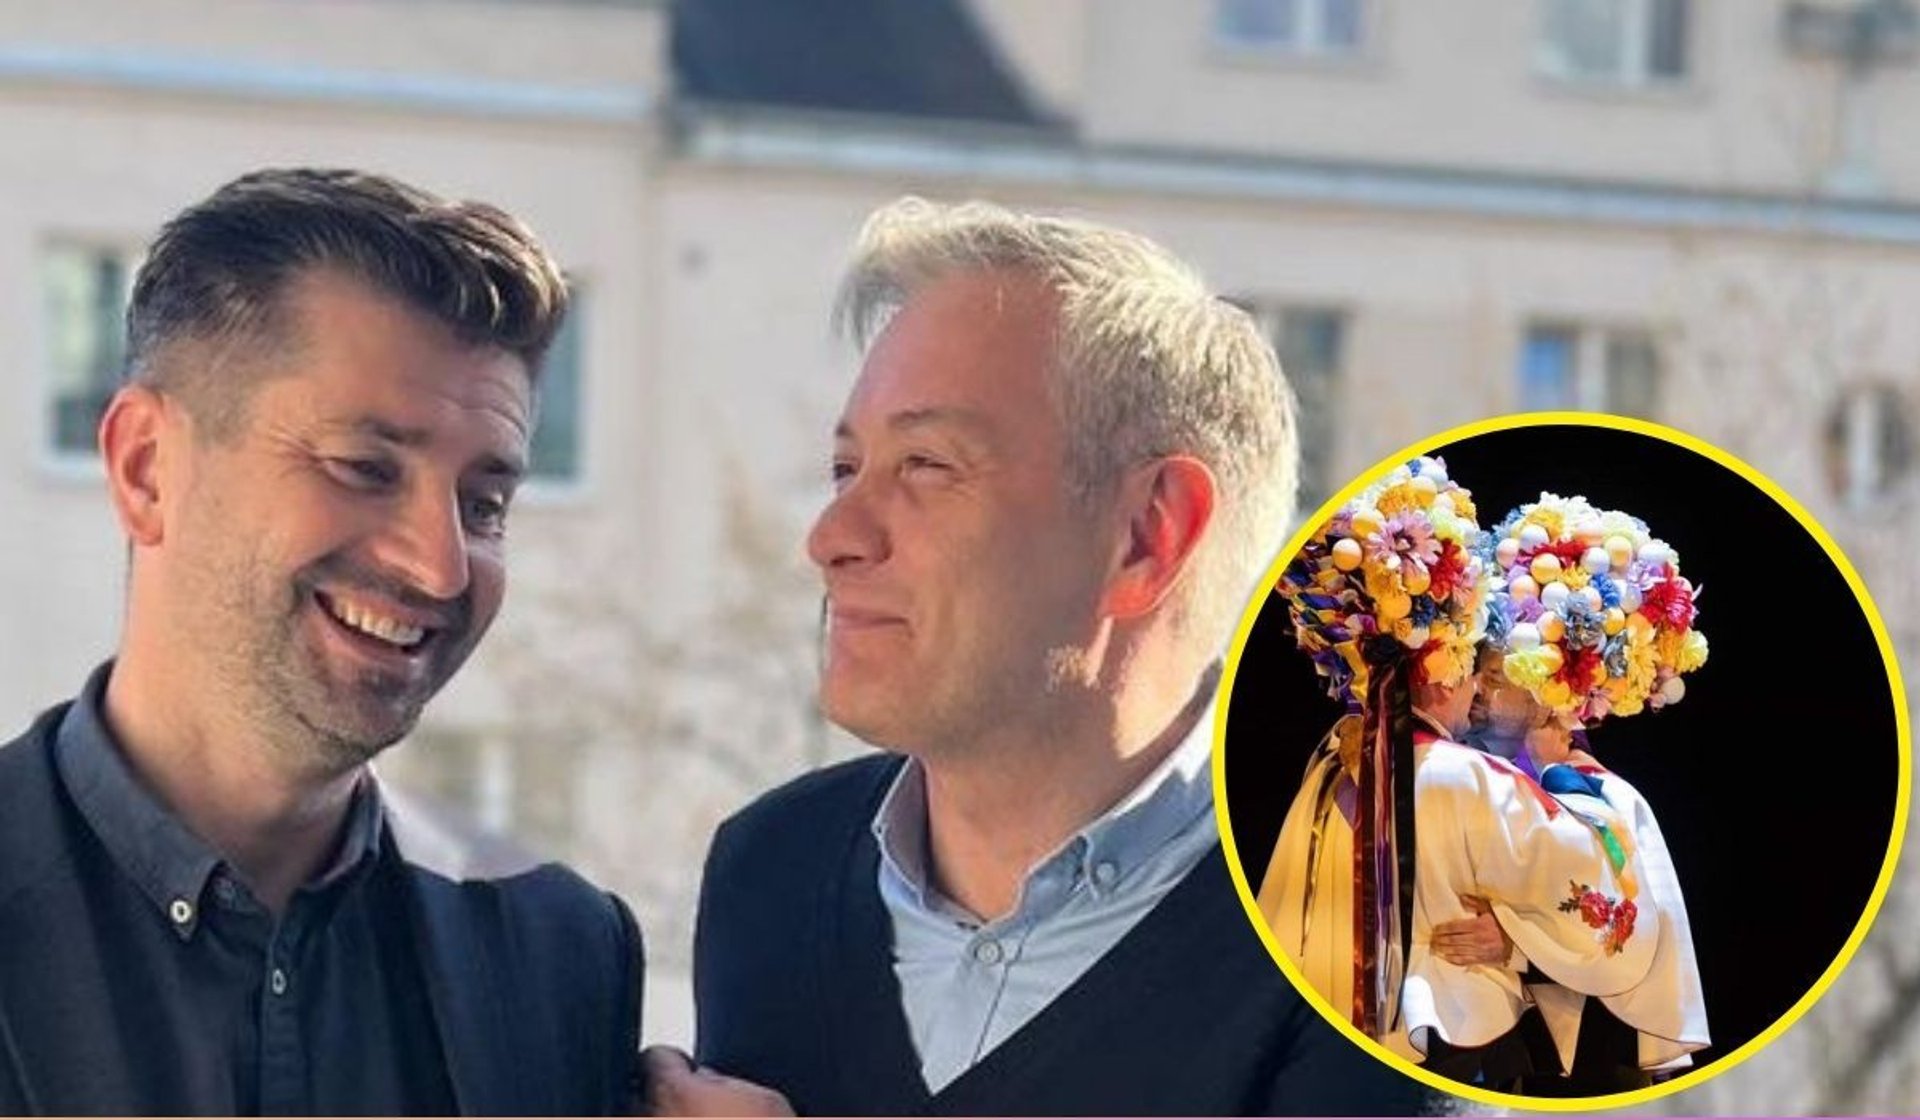 Robert Biedroń podzielił się zdjęciami ze scenicznego ślubu, fot. Instagram/robertbiedron